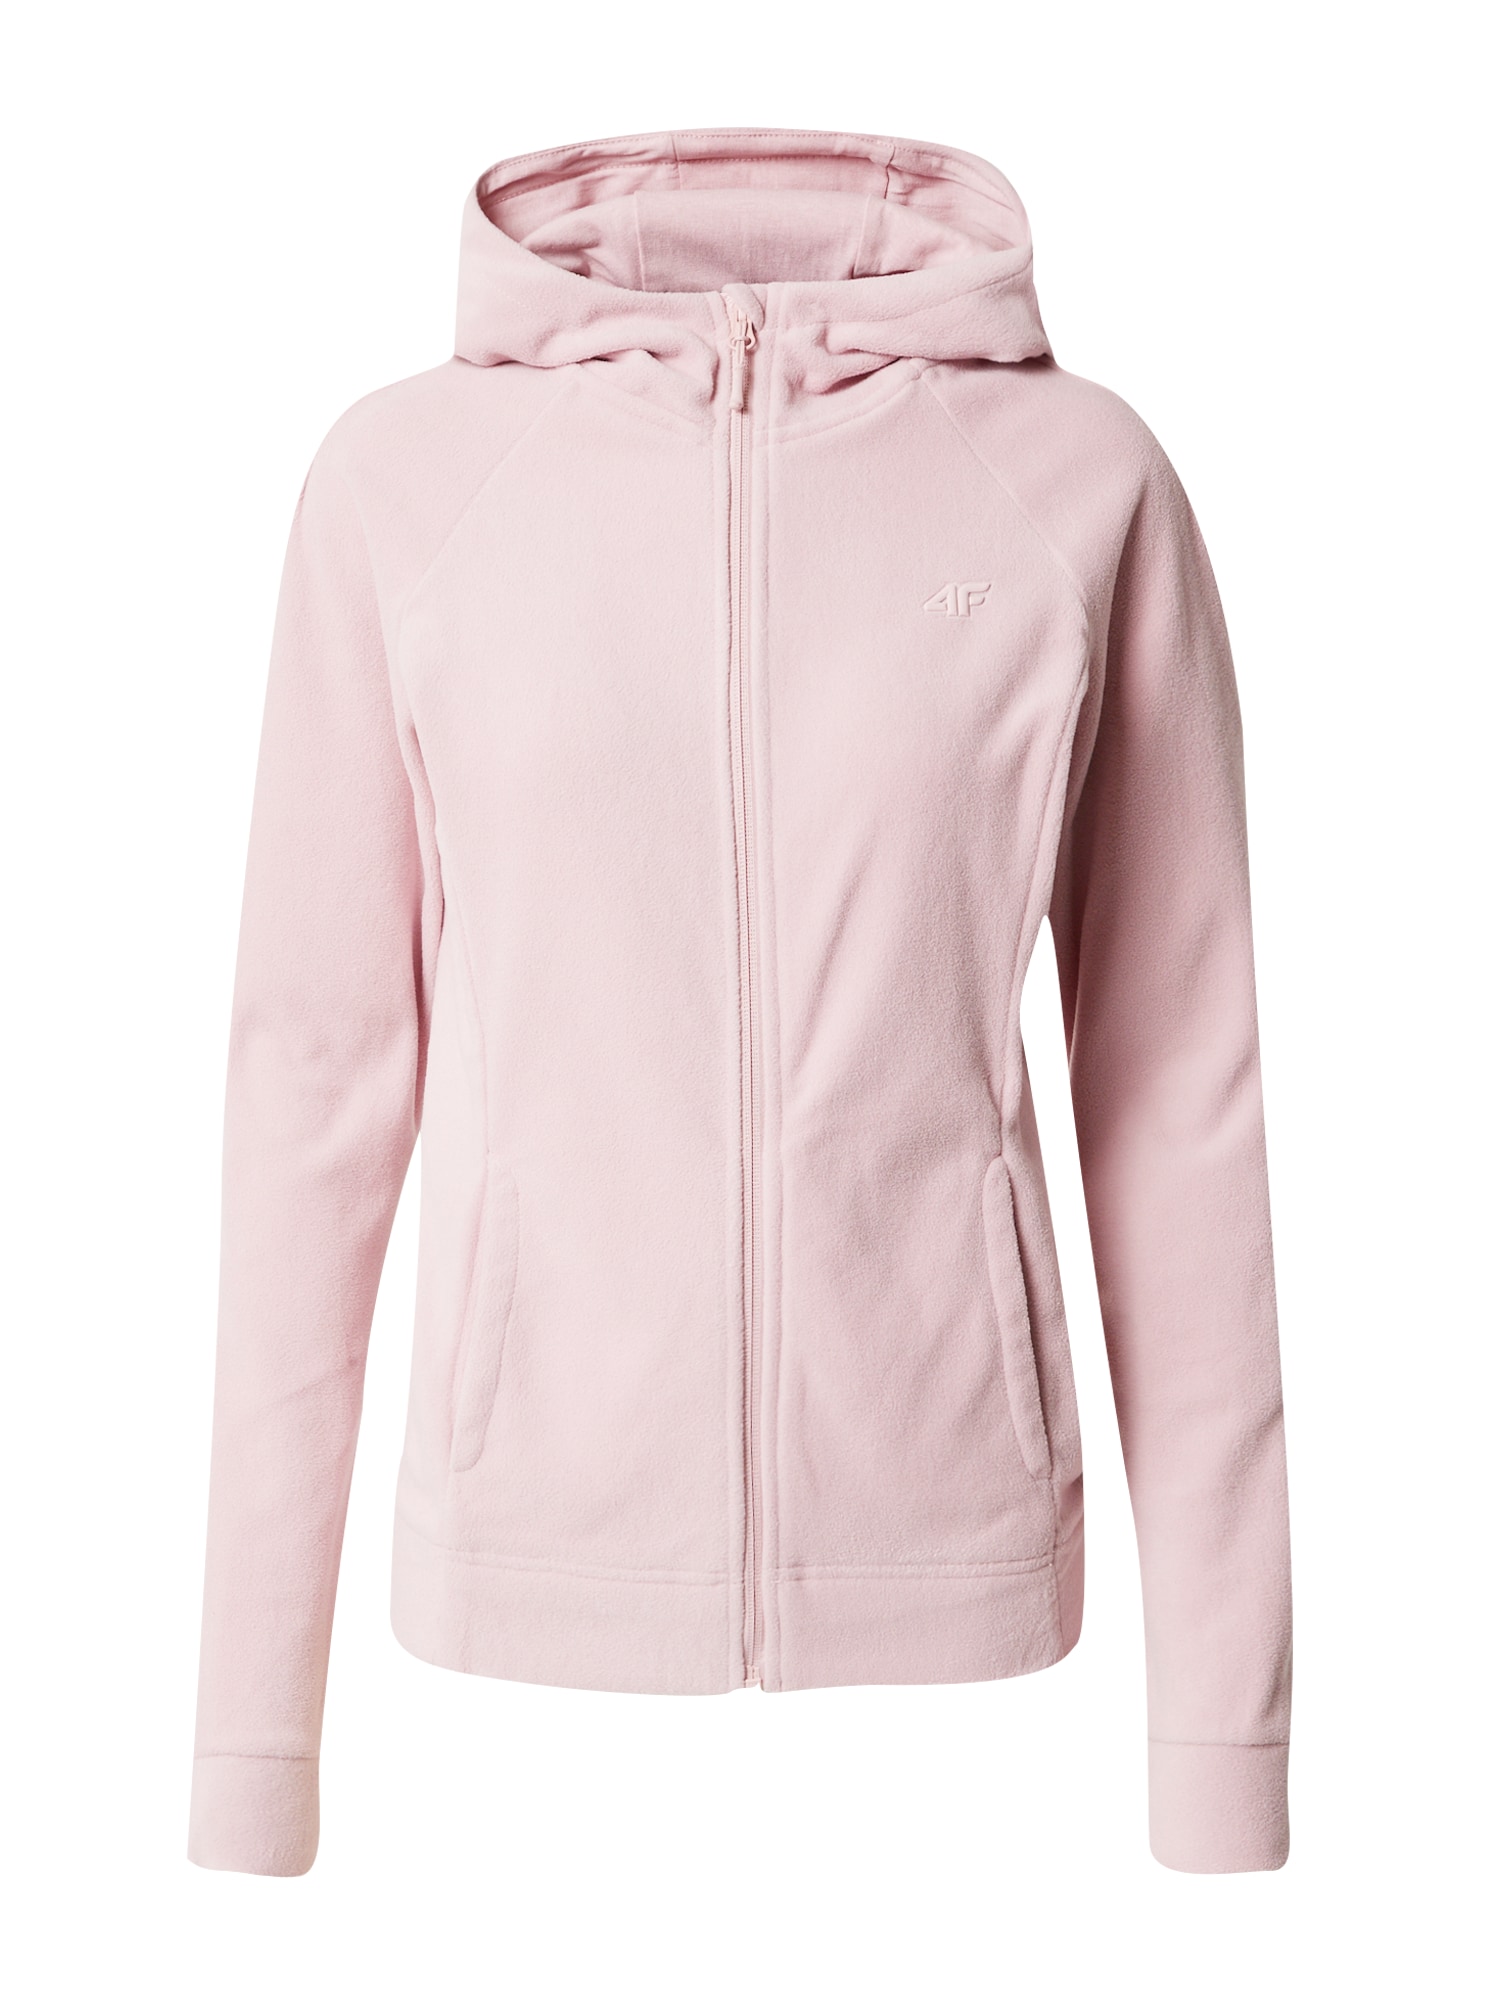 4F Jachetă  fleece funcțională  roz